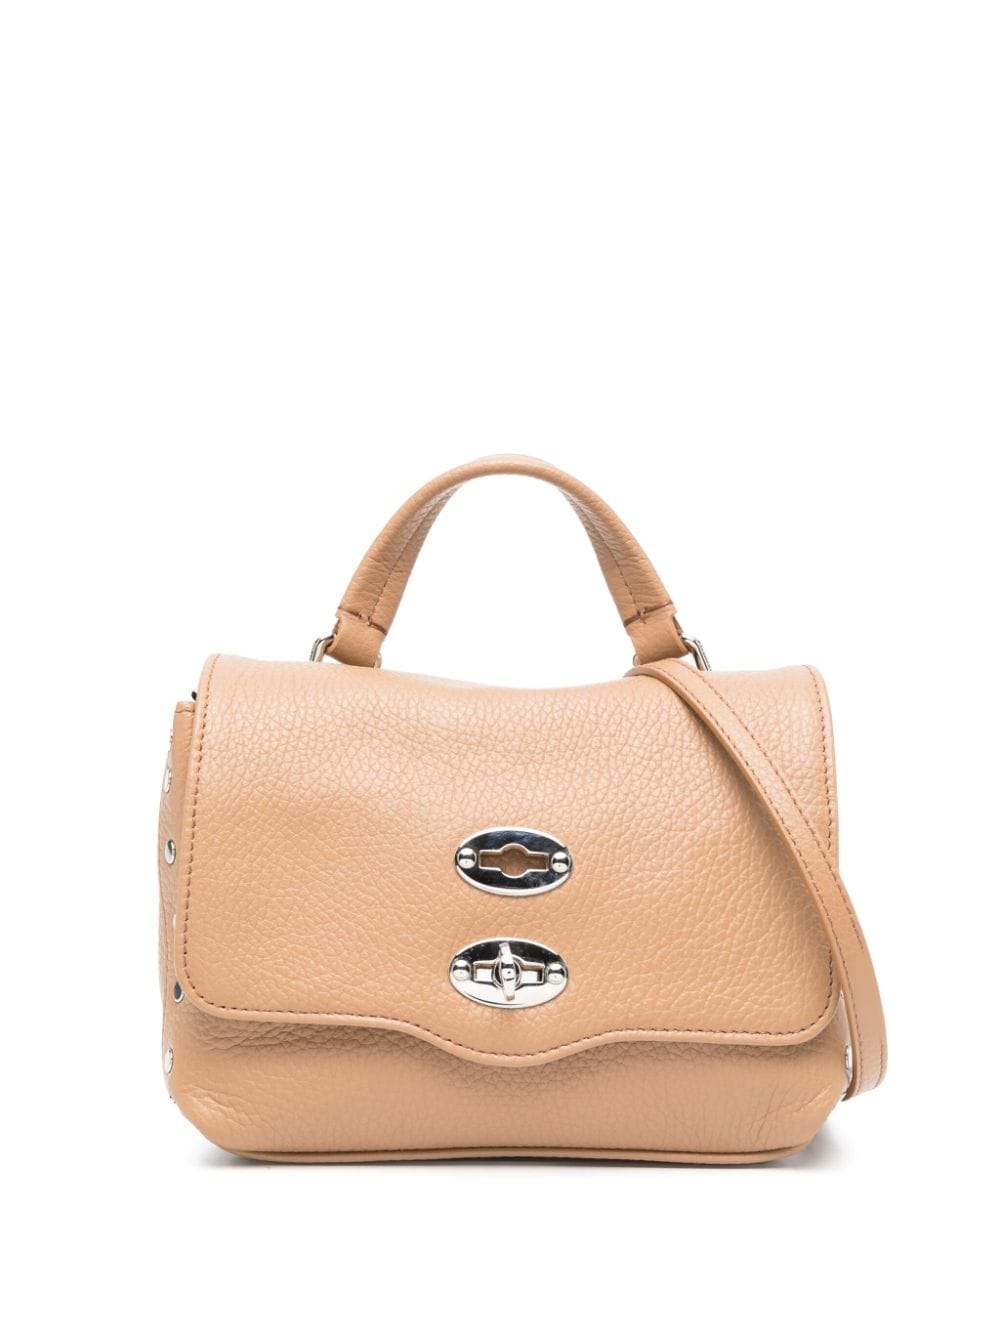 Zanellato Baby Postina® leather tote bag - Brown